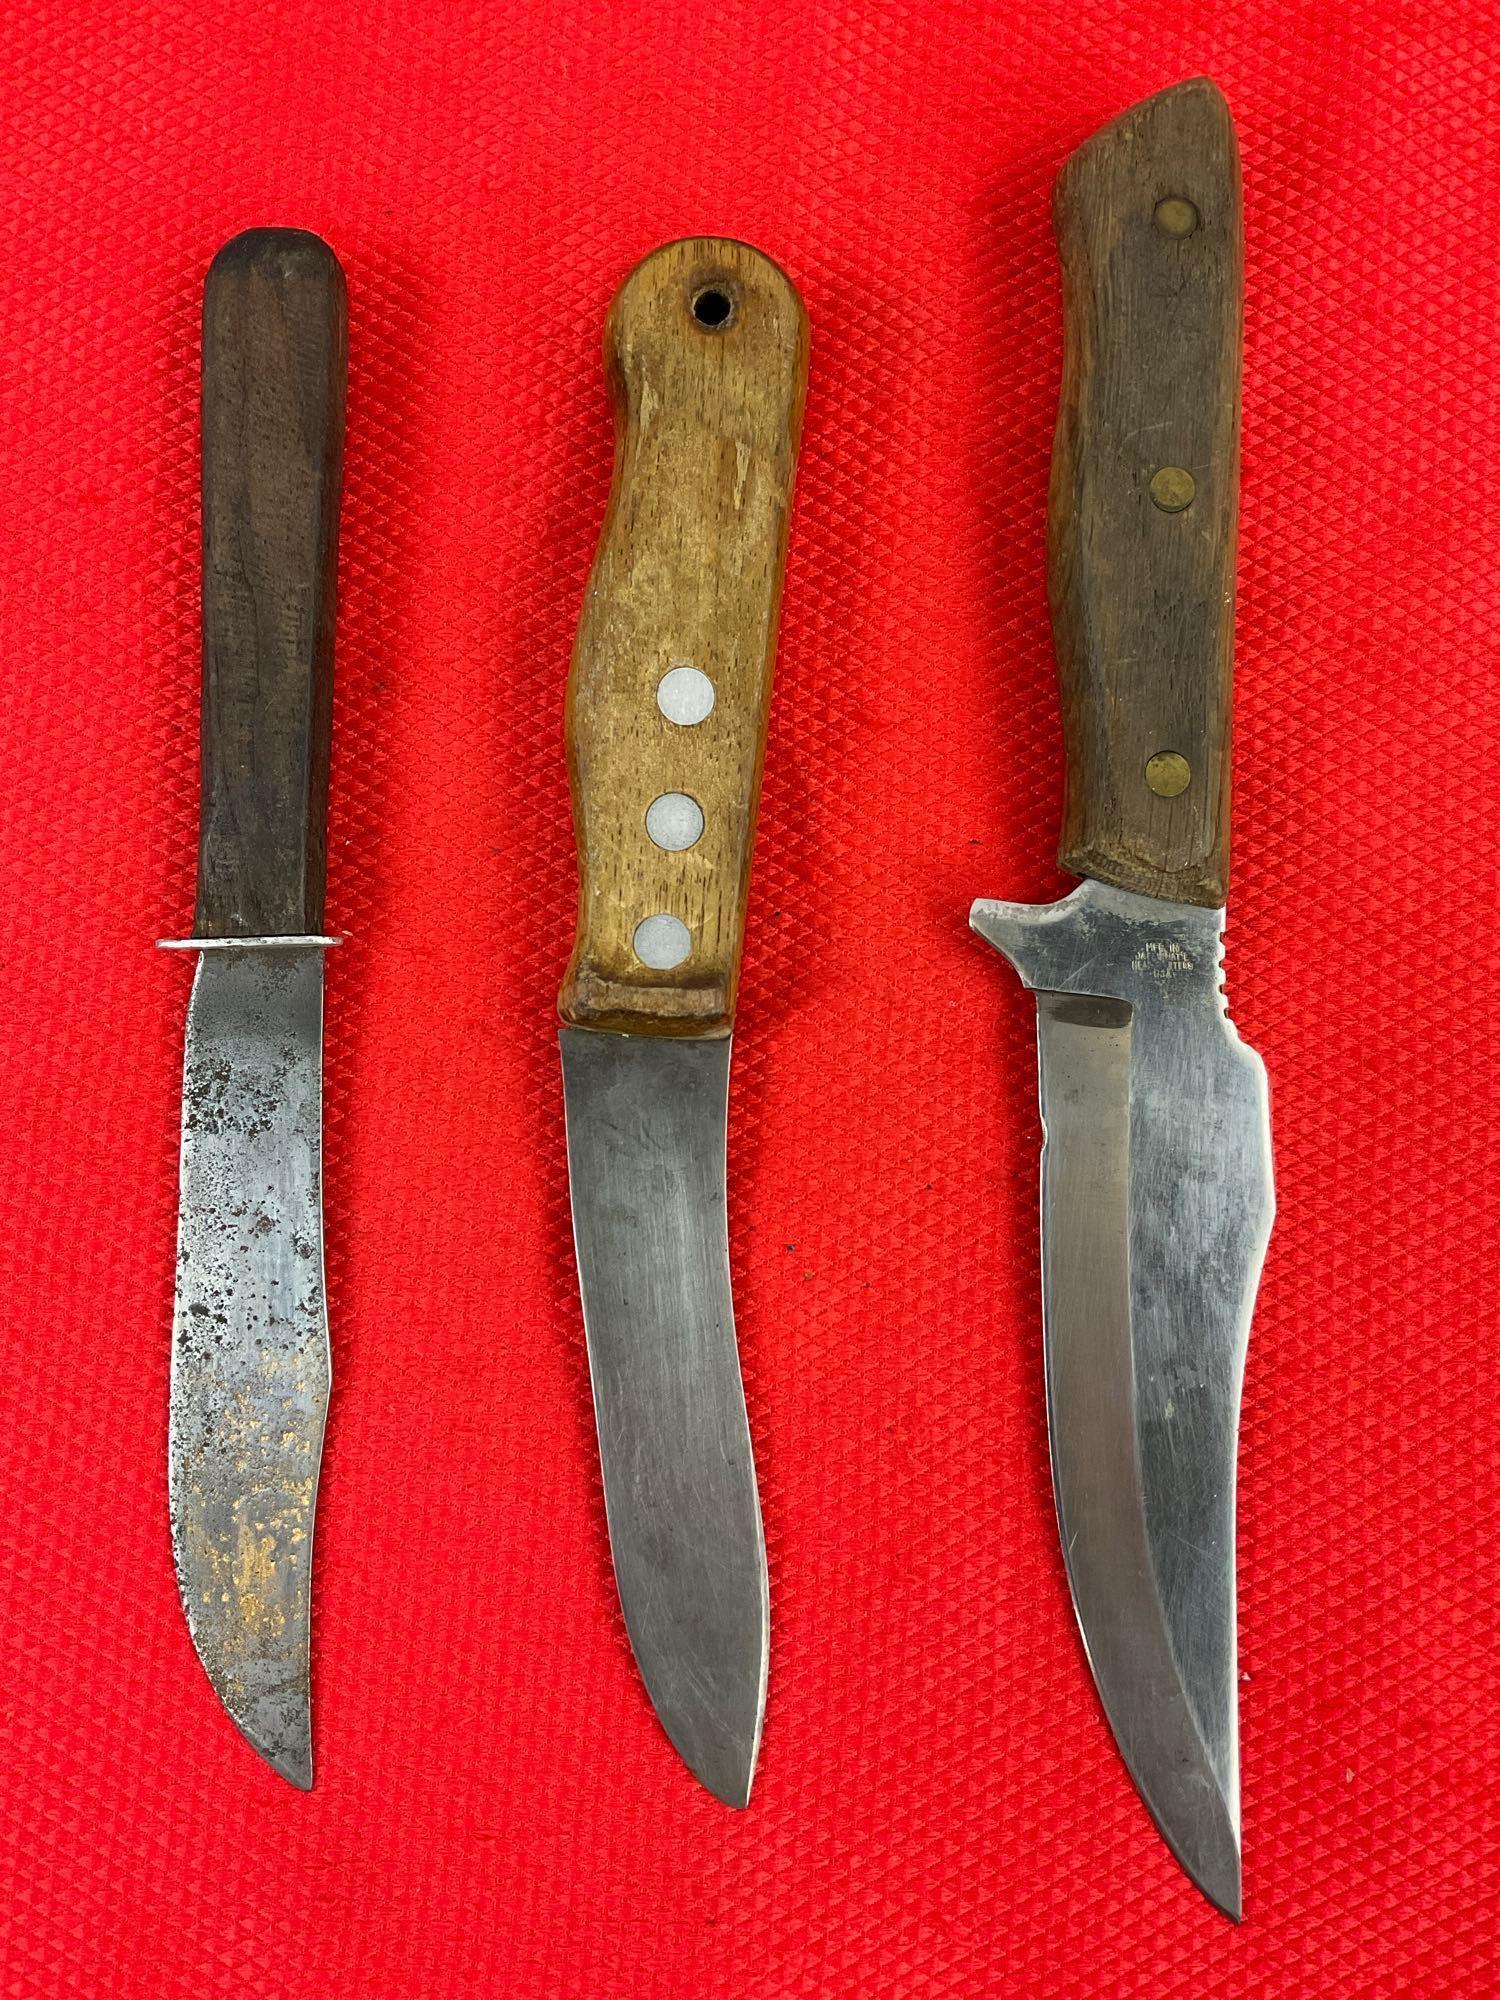 3 pcs Vintage Steel Fixed Blade Knives. 1 Maxam, 1 Cattaraugus Vanadium, 1 Unmarked. See pics.